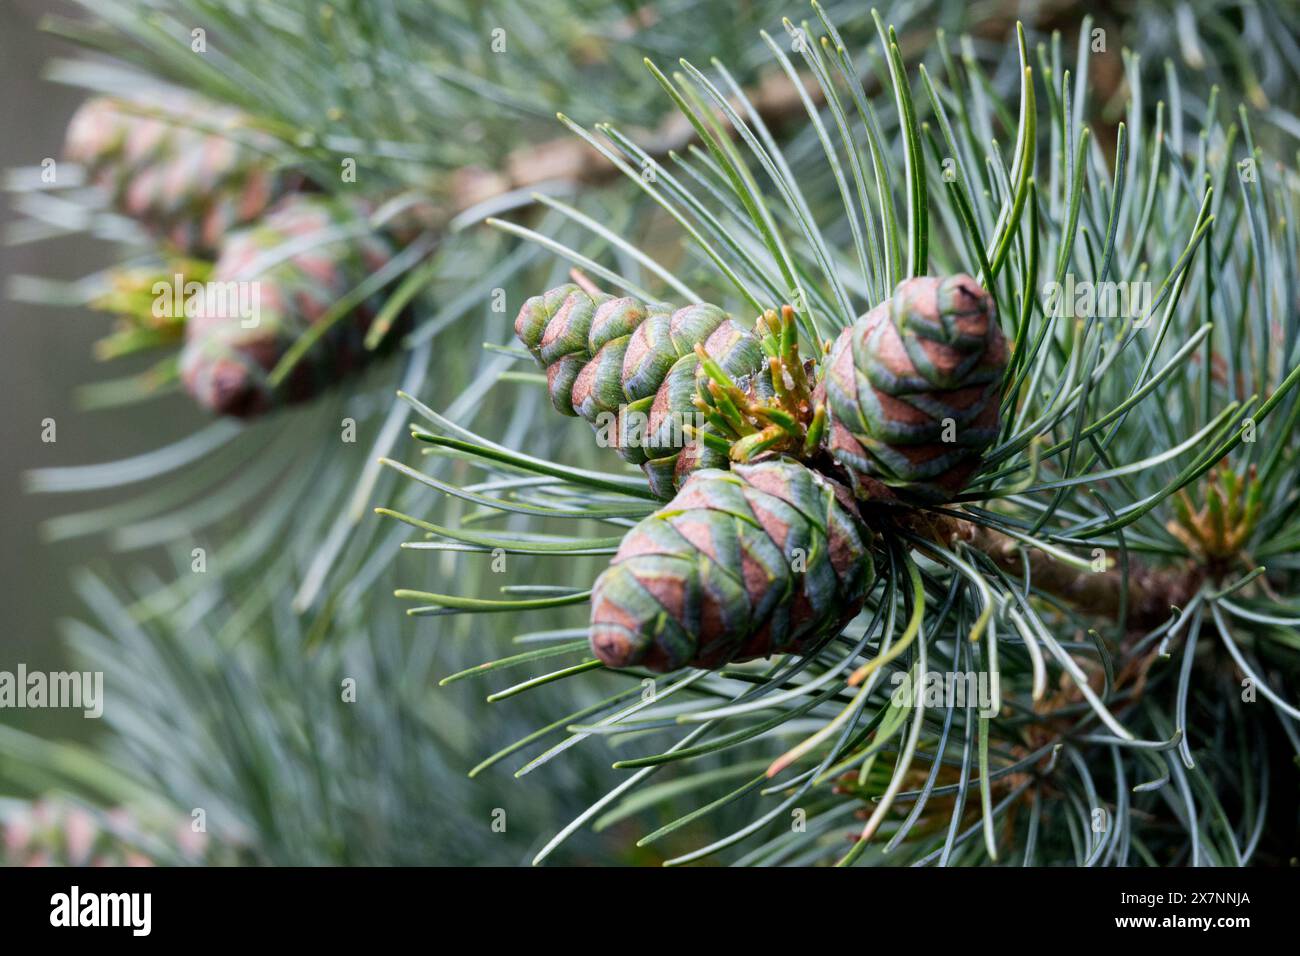 Japanese White Pine Cones, Pinus Parviflora 'Glauca' Stock Photo